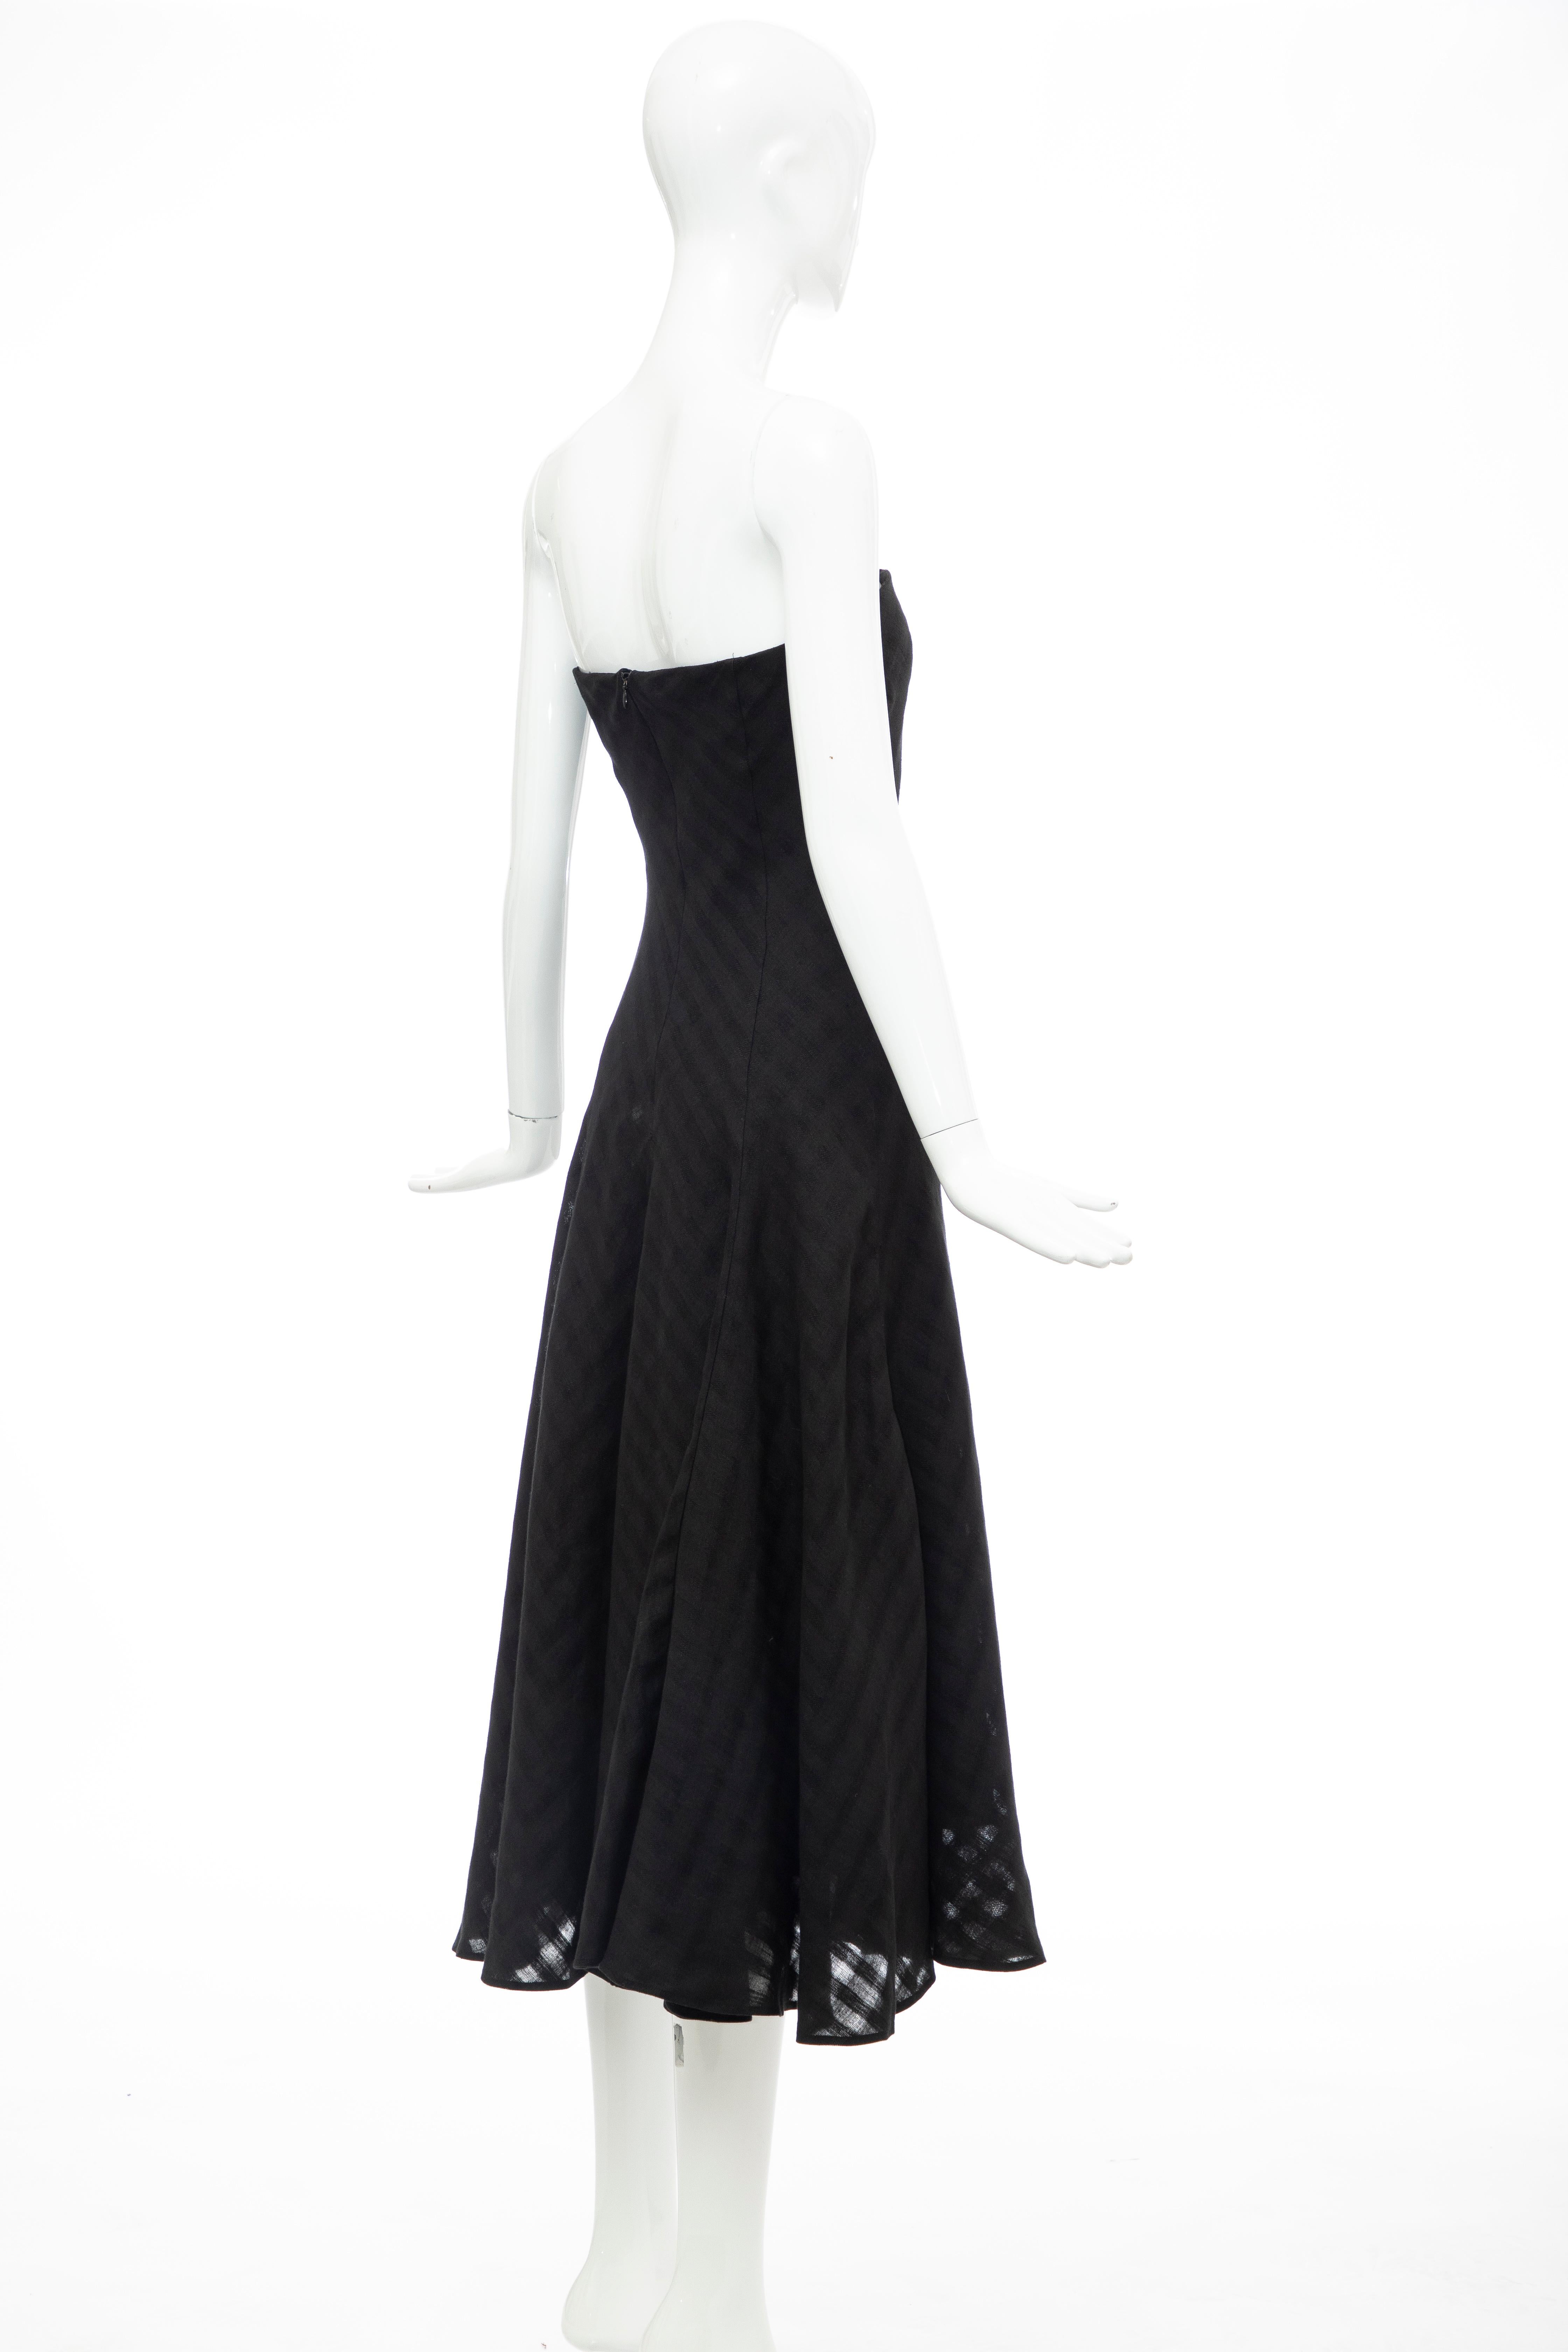 Olivier Theyskens Runway Black Linen Dress, Spring 2000 For Sale 2